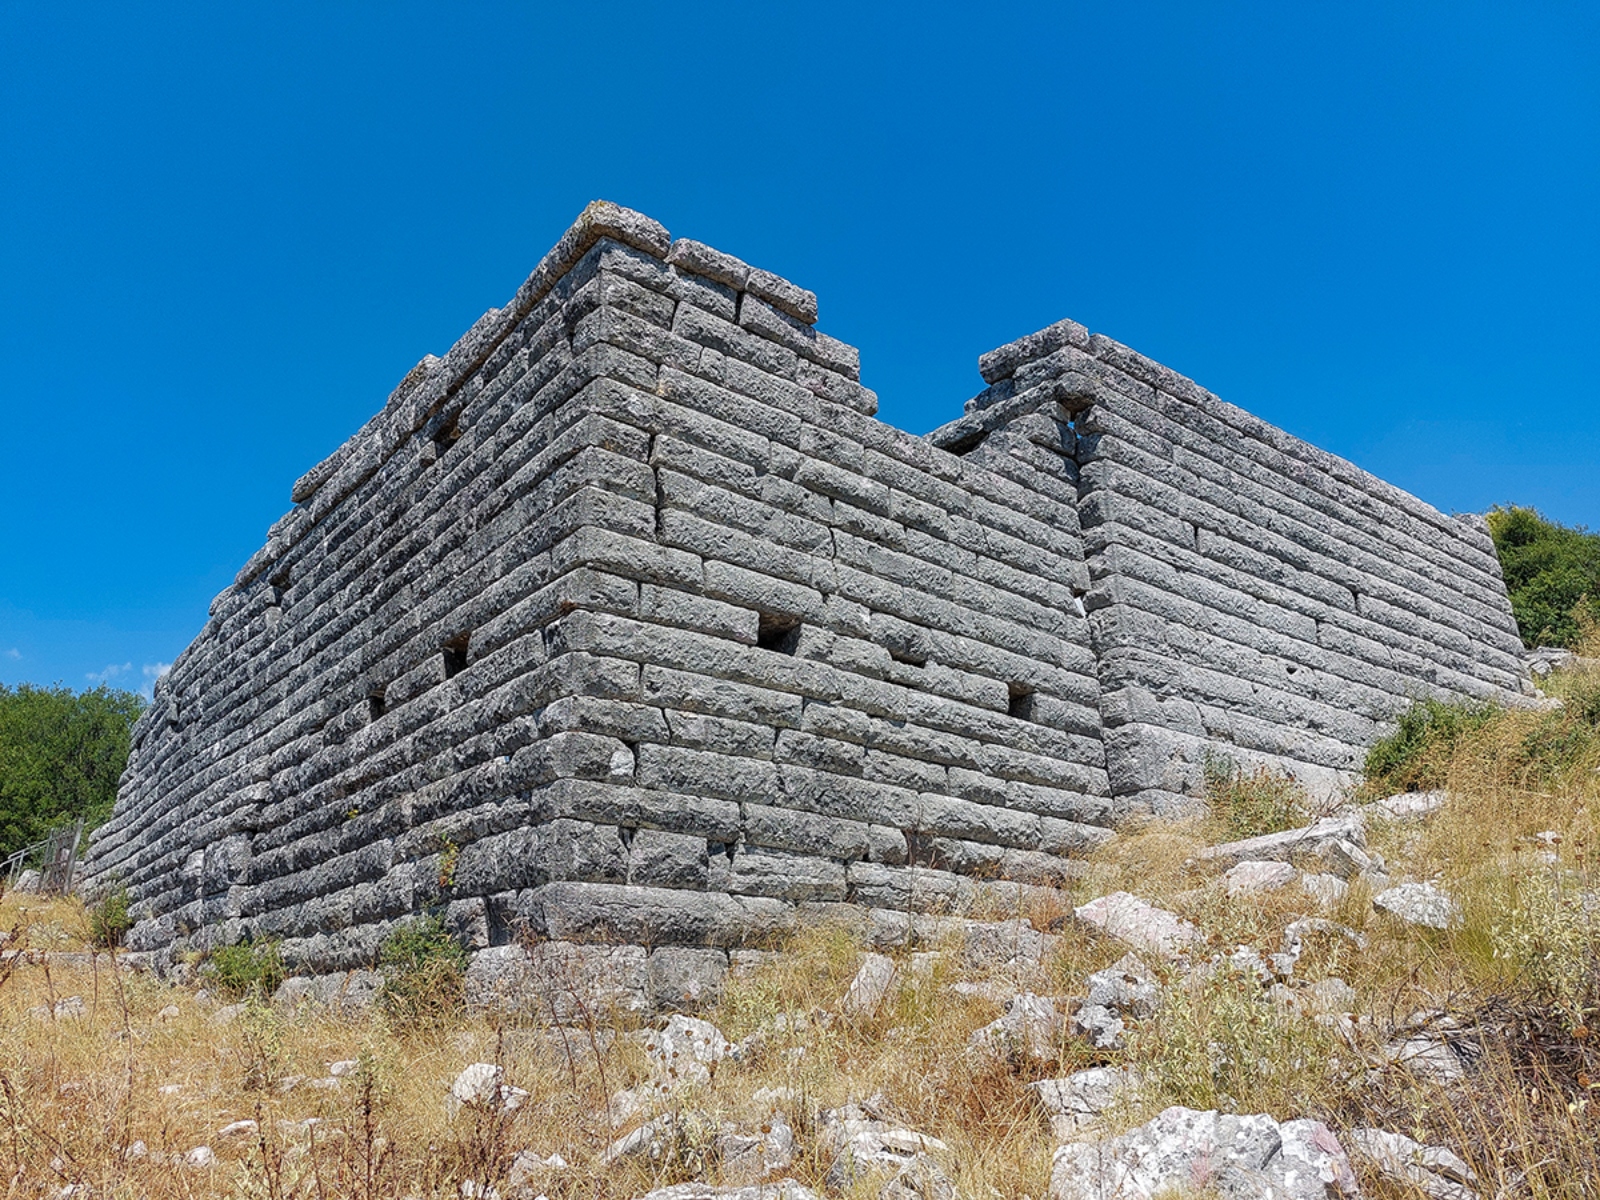 Τα Μοναδικά Σπίτια των Αρχαίων που Δεν “Σκούπισε” ο Χρόνος Βρίσκονται σε  ένα Κακοτράχαλο Βουνό της Ηπείρου